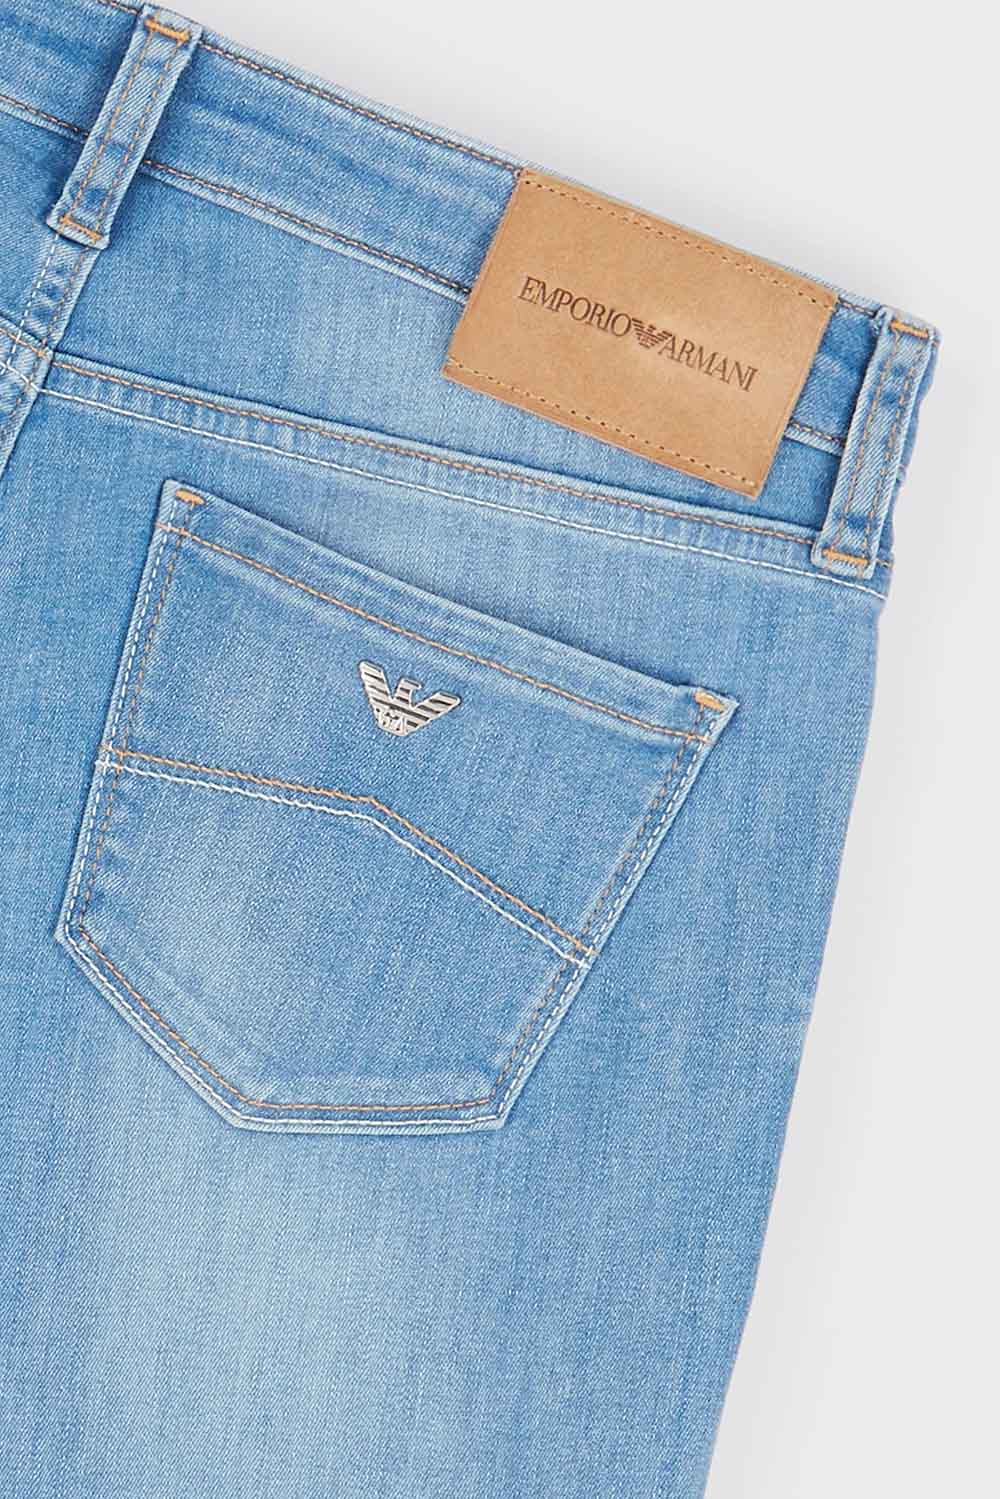 Pantalón de la marca Emporio Armani color Jeans mujer